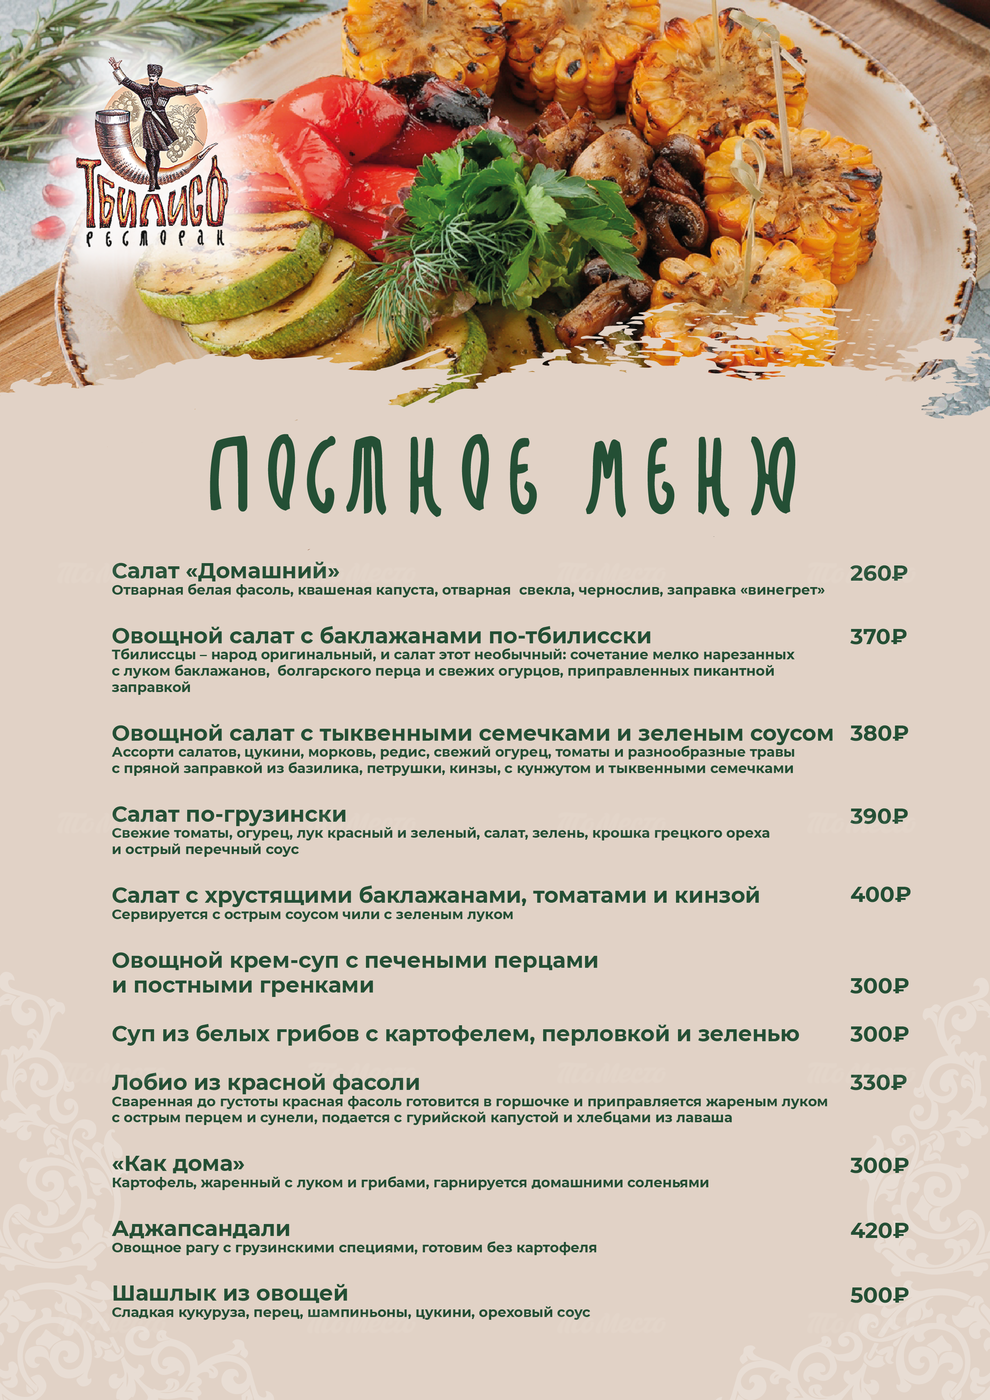 Рестораны с постным меню в москве. Меню ресторана. Постное меню в кафе. Постное меню в ресторанах 2022. Пост ресторанный меню.